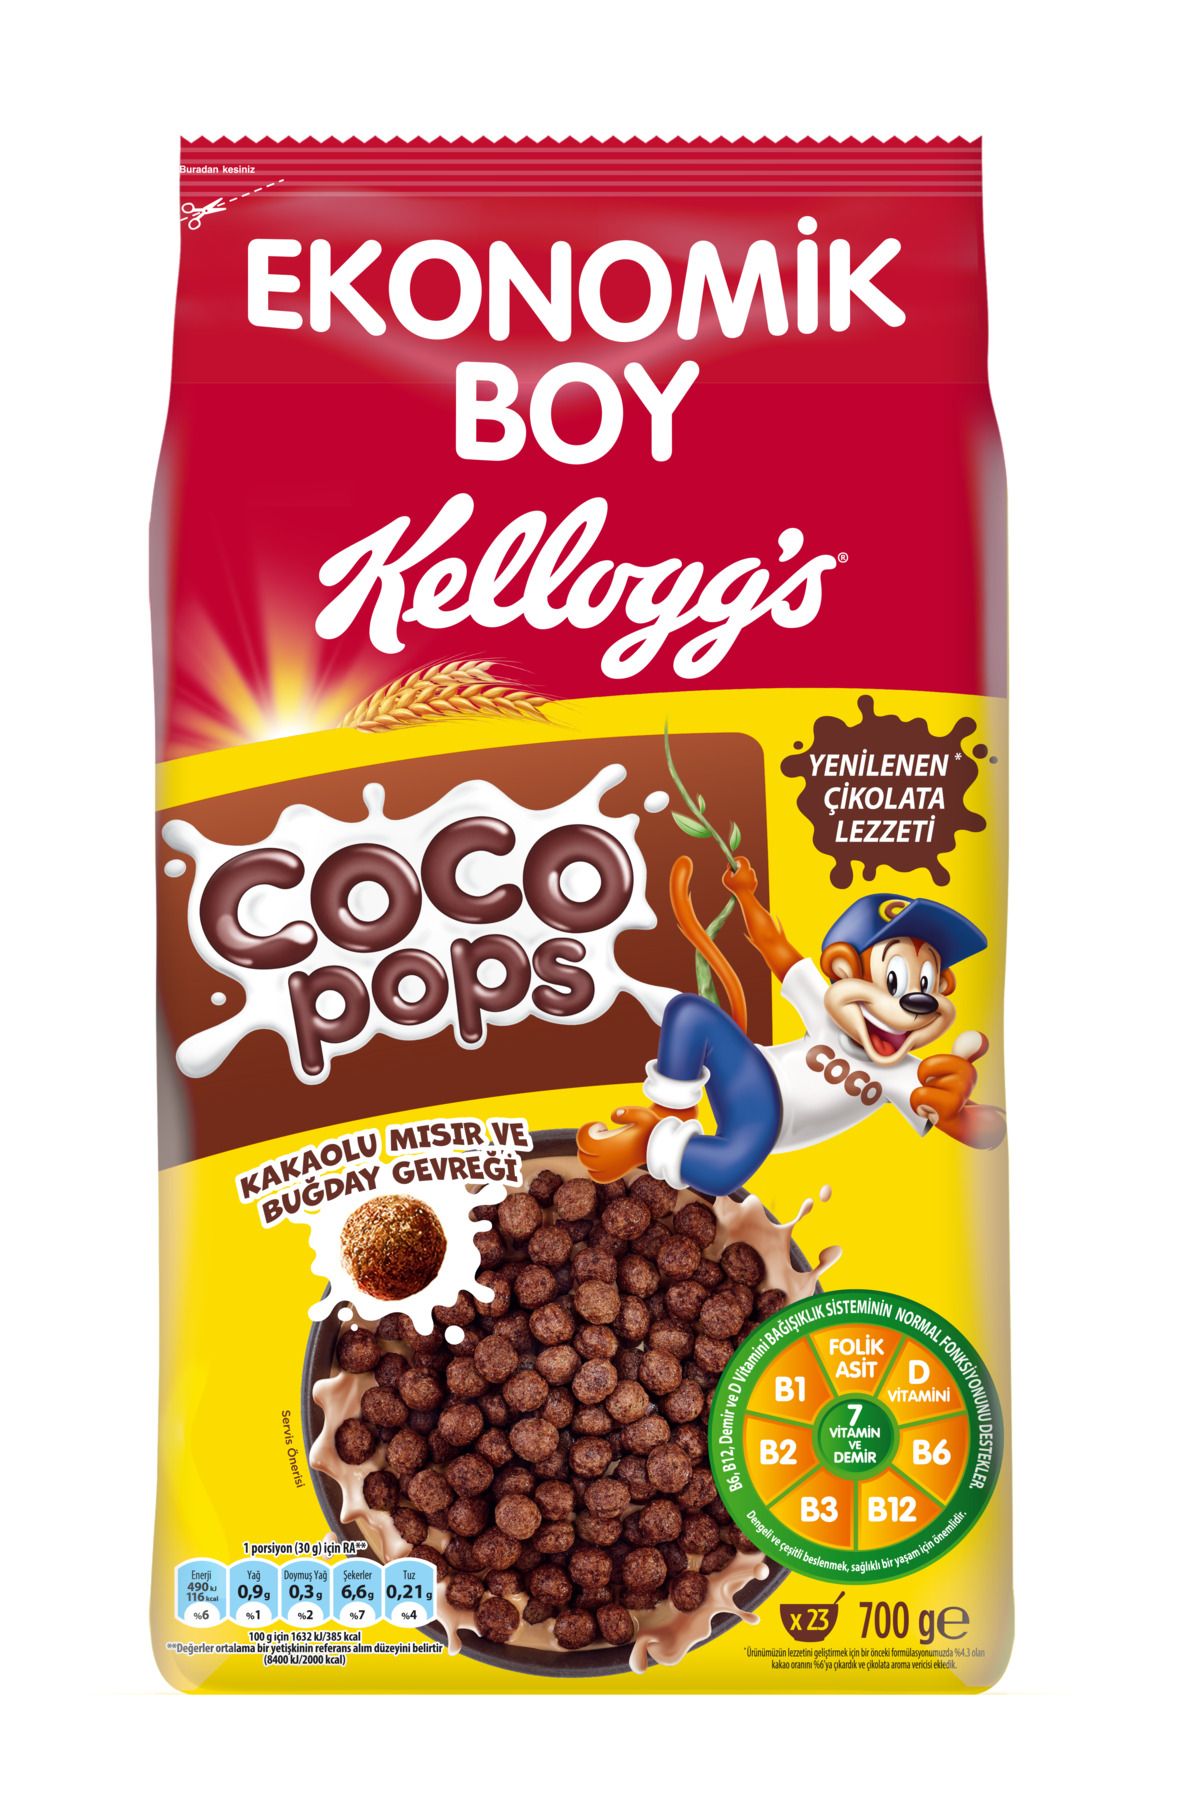 Kellogg's Coco Pops Çikolatalı Buğday Ve Mısır Gevreği 700 Gr, Lif,demir Ve 6 Vitamin Içerir